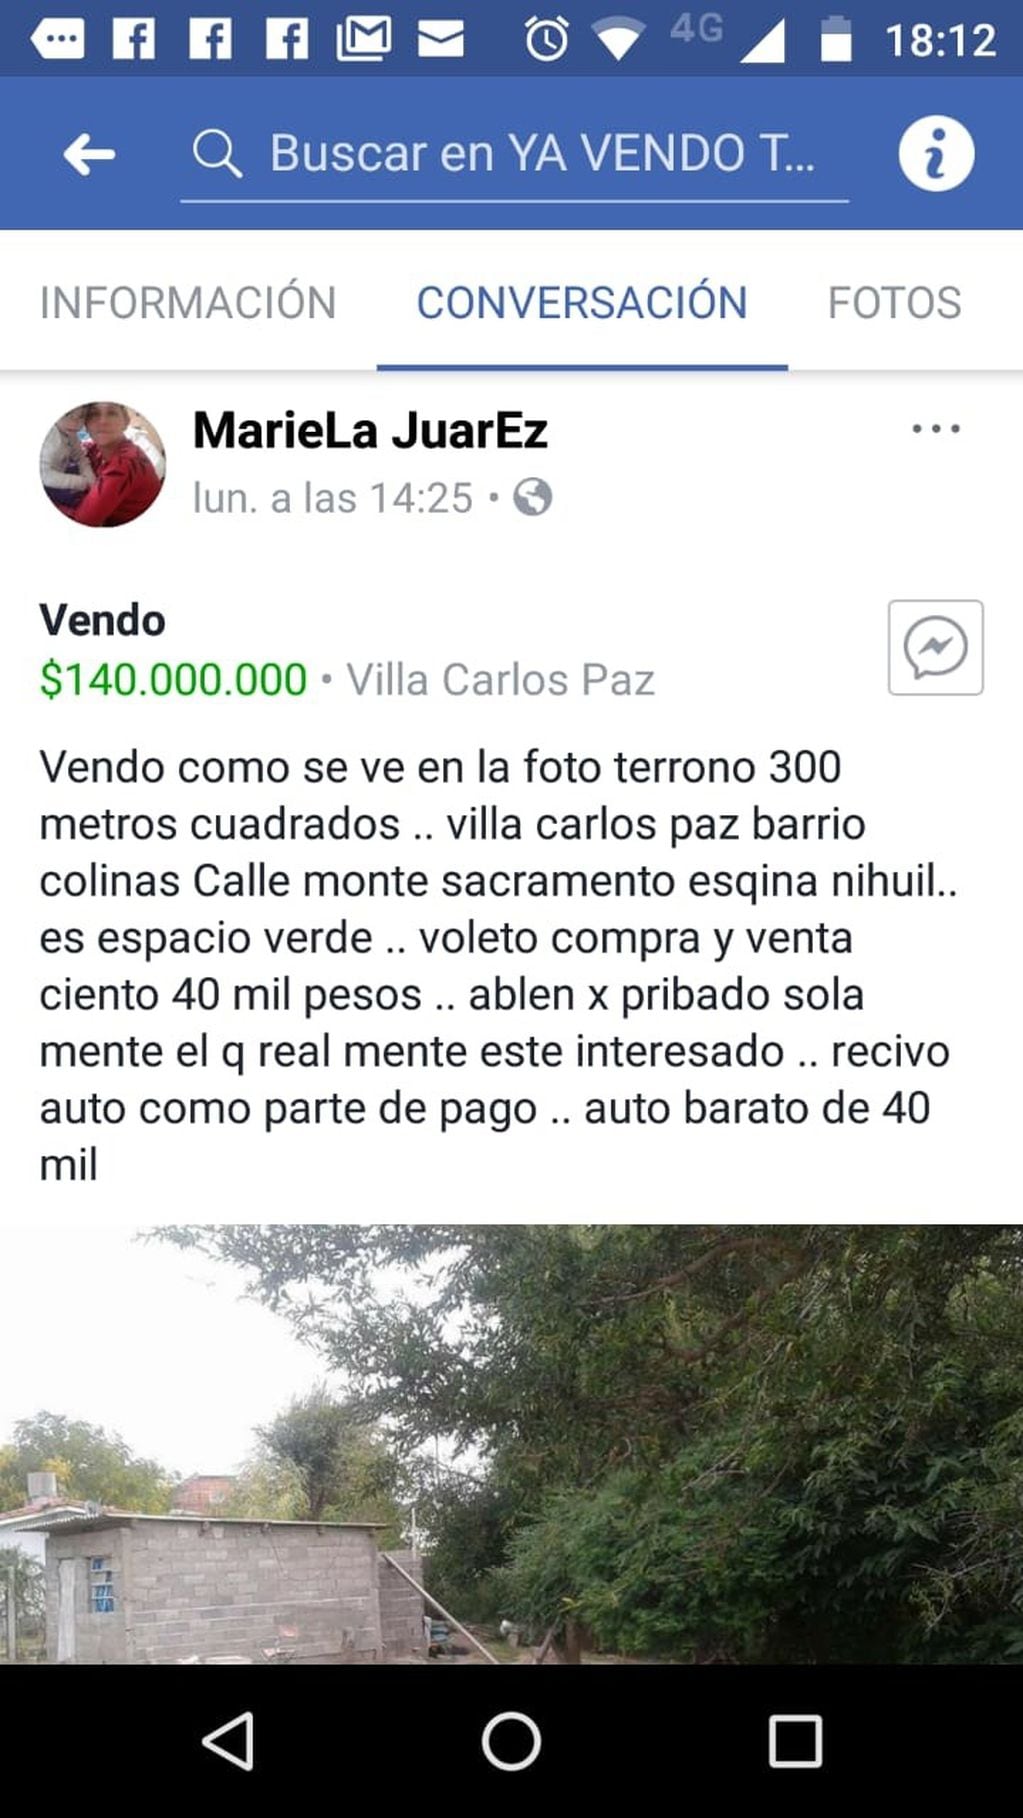 Los usurpadores venden los terrenos en Internet ante la amenaza por desalojos en el barrio Colinas de Villa Carlos Paz.